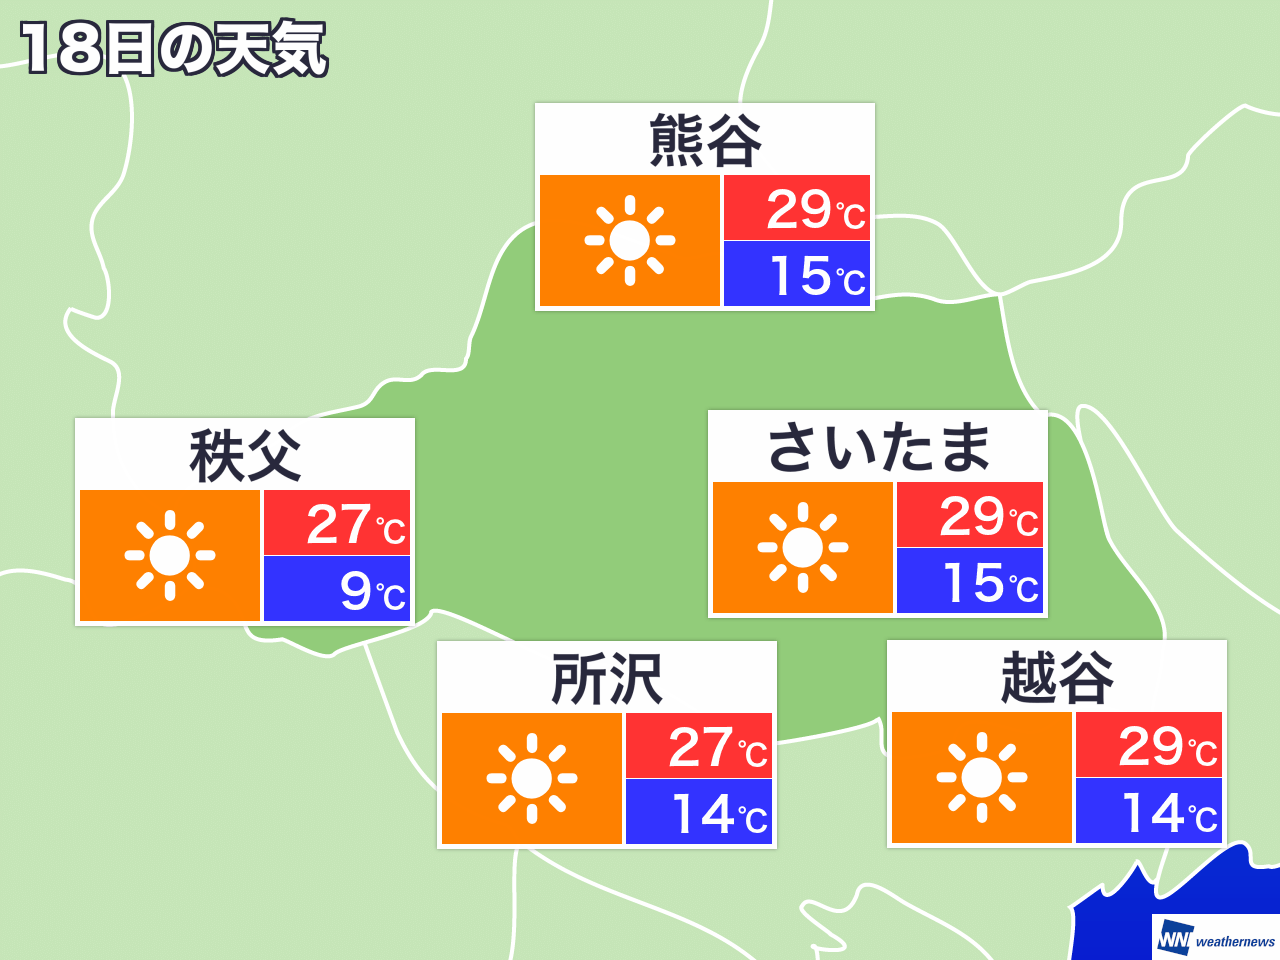 2月11日 火 埼玉県の今日の天気 ウェザーニュース